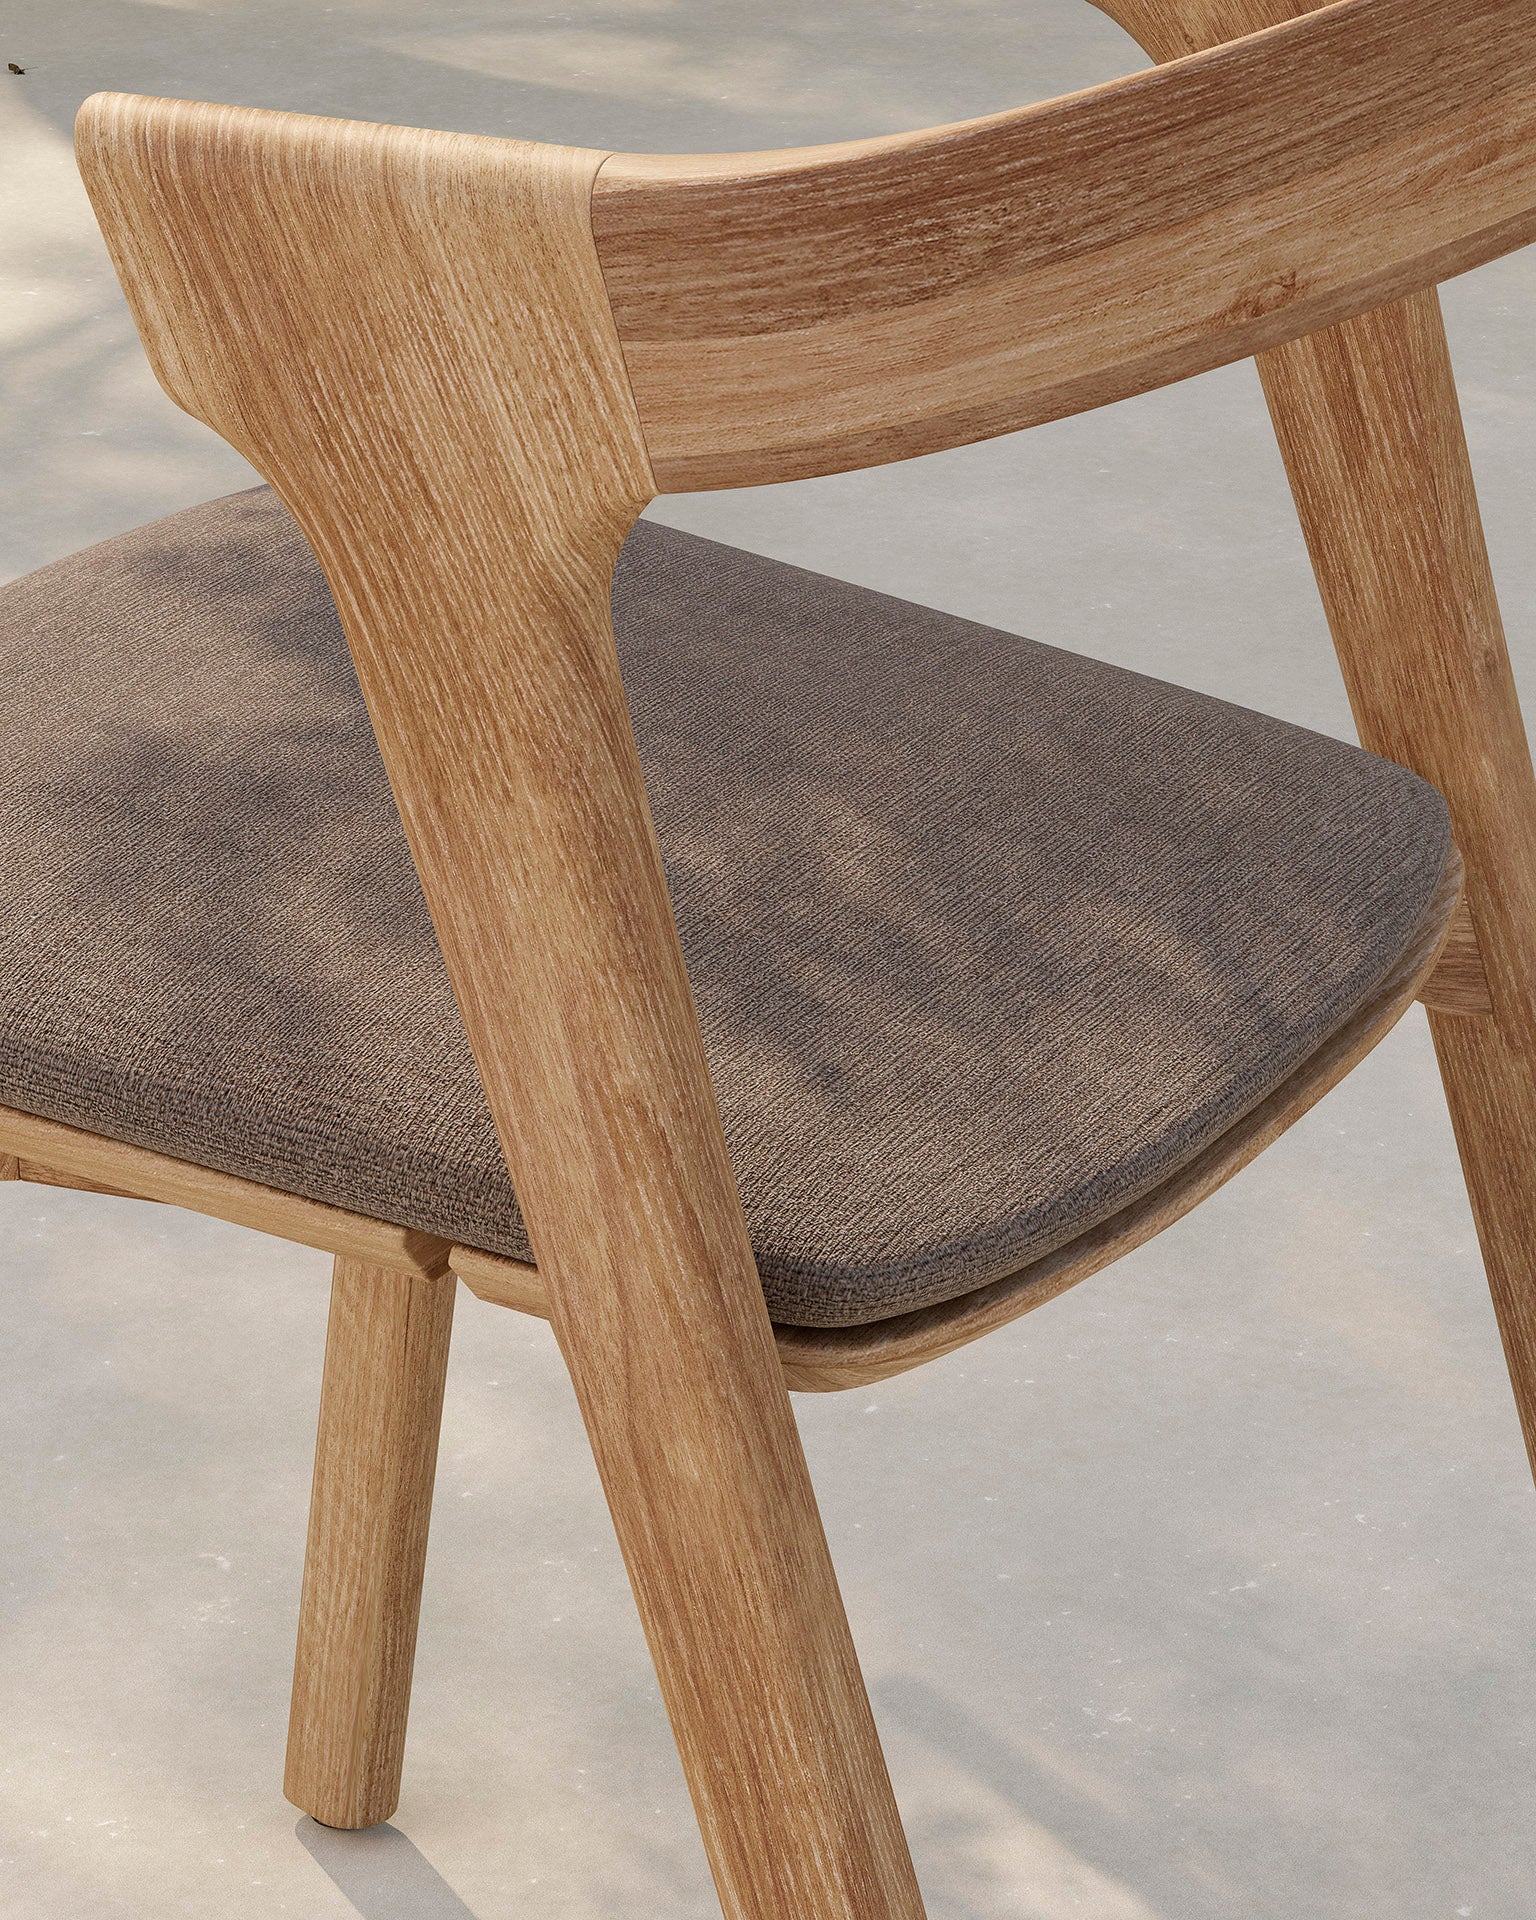 比利時原裝進口實木傢俬 - 戶外系列 - Bok系列柚木餐椅